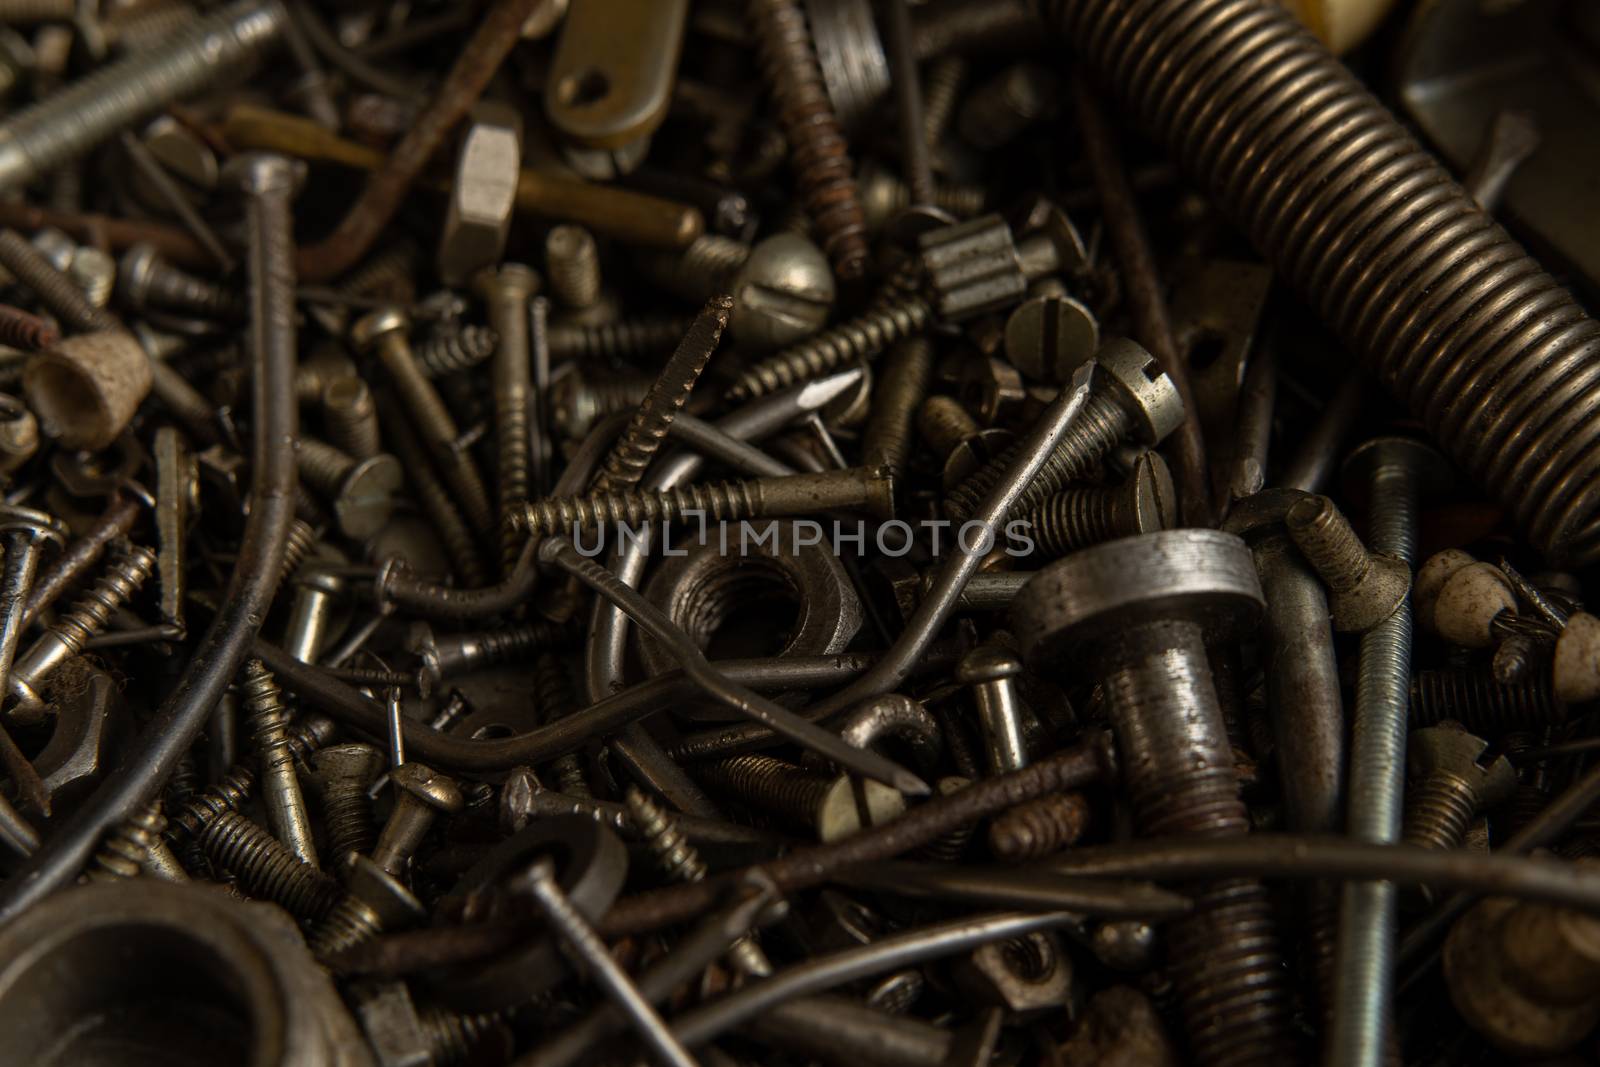 Range Rusty old screws bolts nuts. Grunge metal Hardware details dark nackground